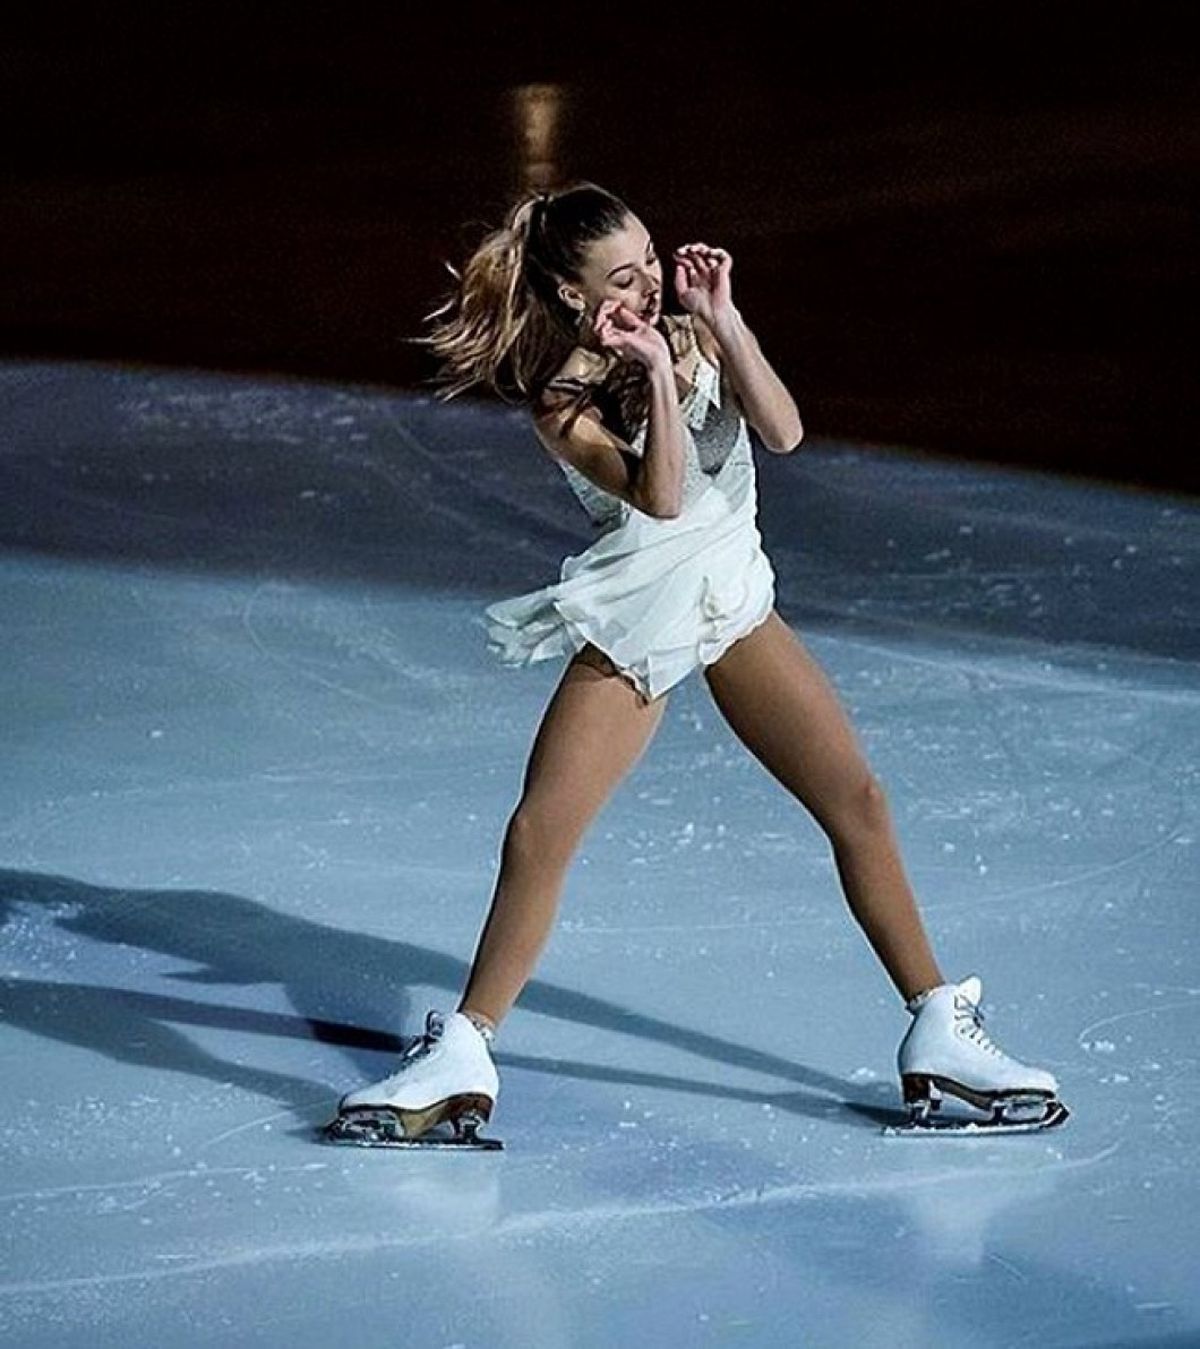 Laura Barquero, patinatoarea depistată pozitiv la Clostebol